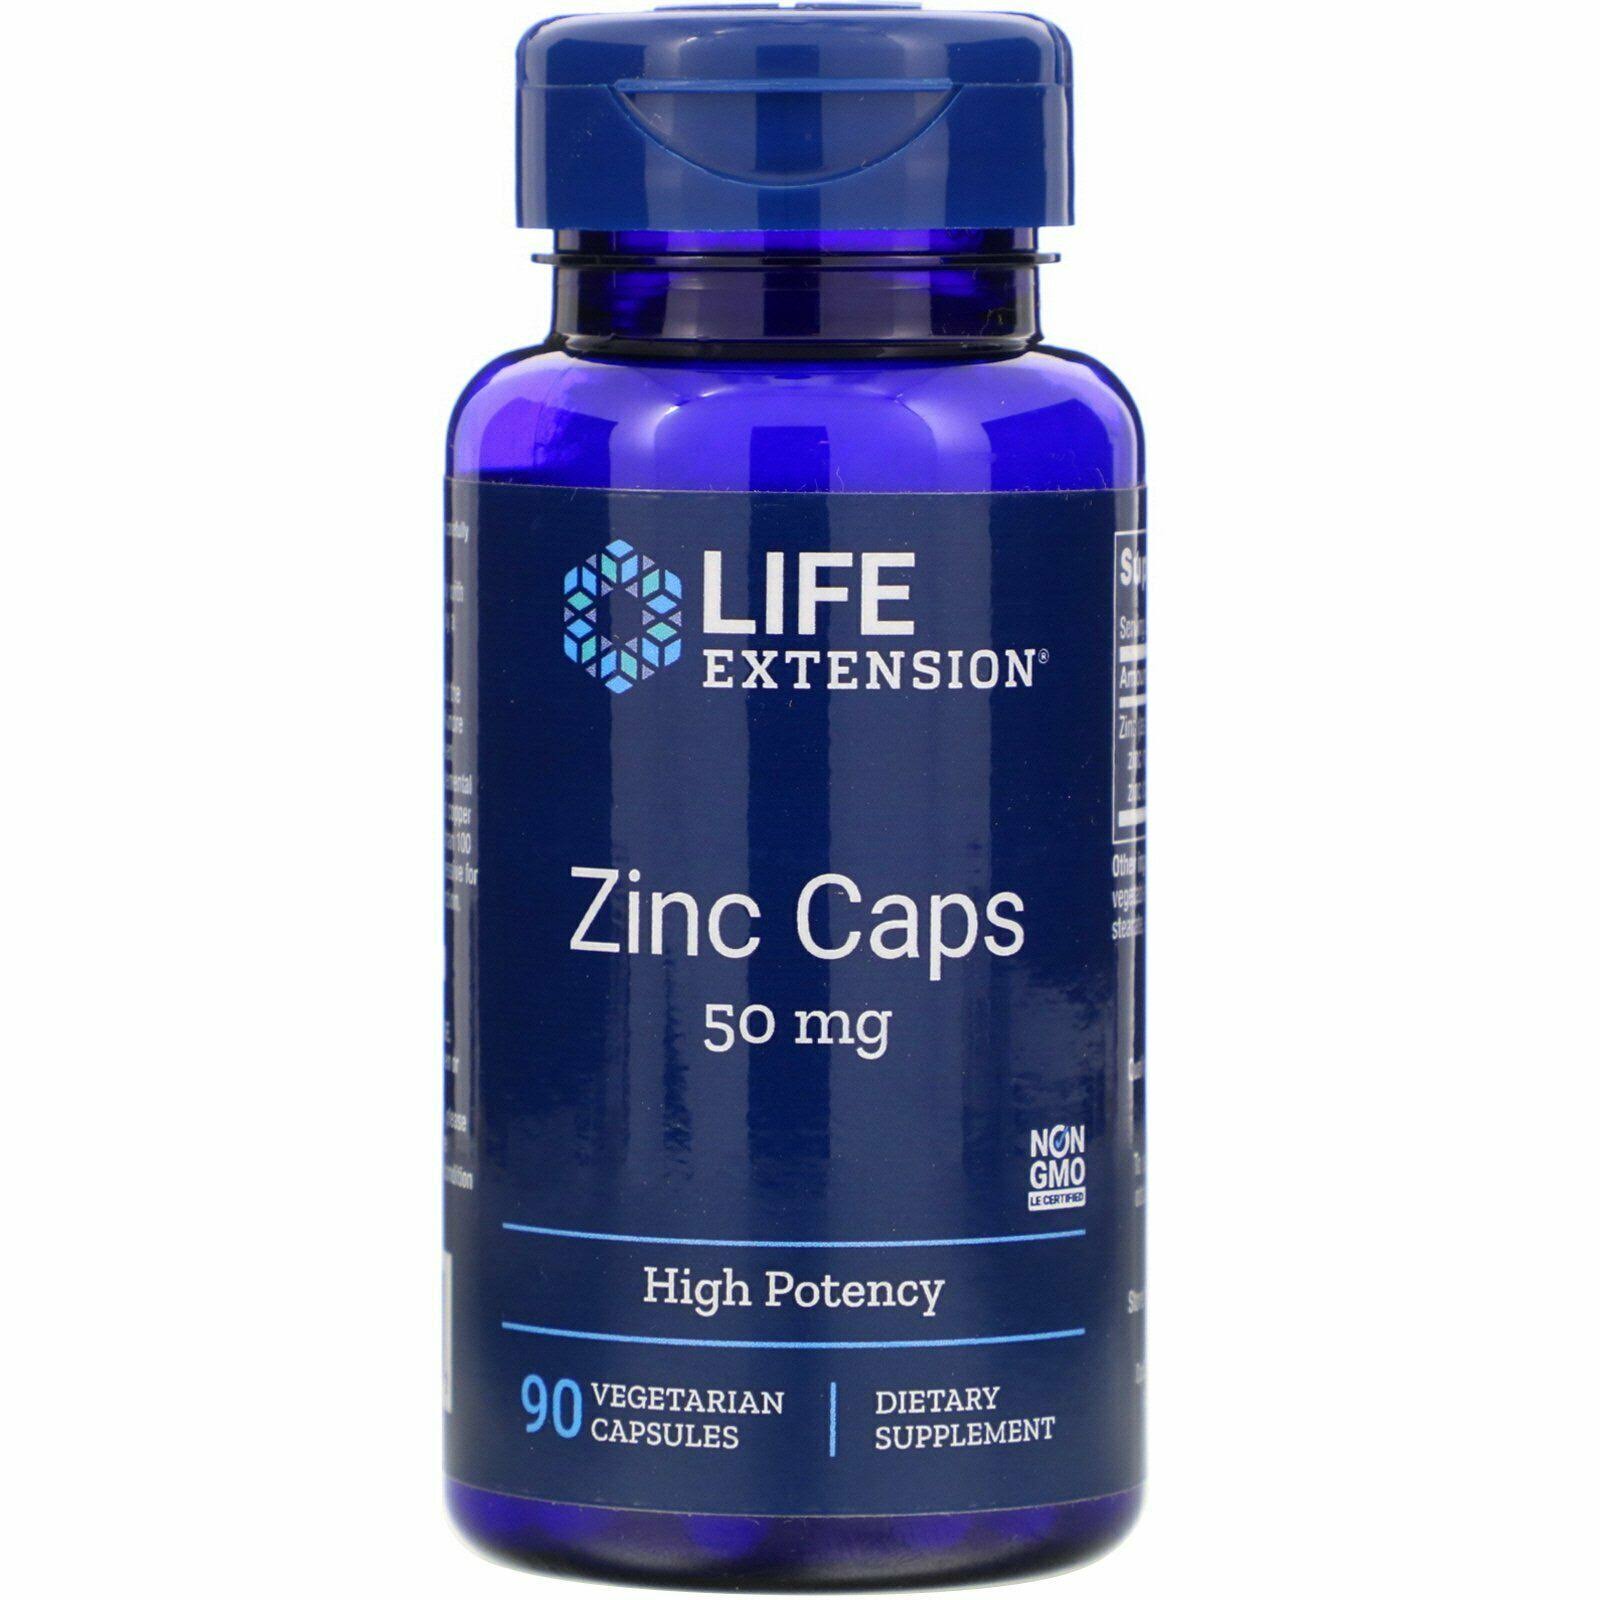 Life Extension Zinc Caps - 50mg, 90 Capsules